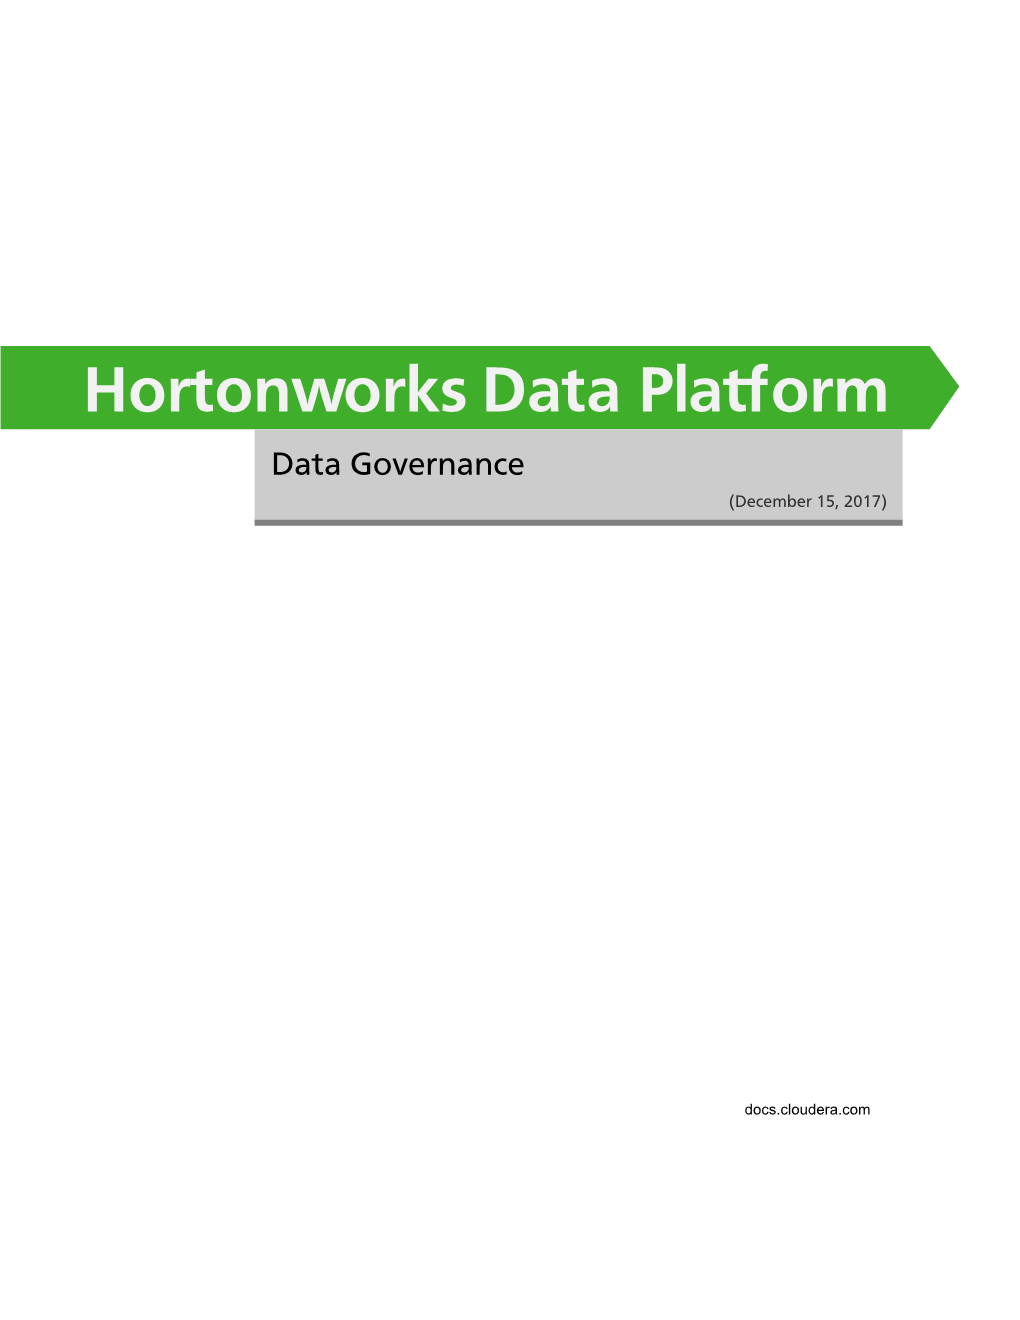 Data Governance (December 15, 2017)